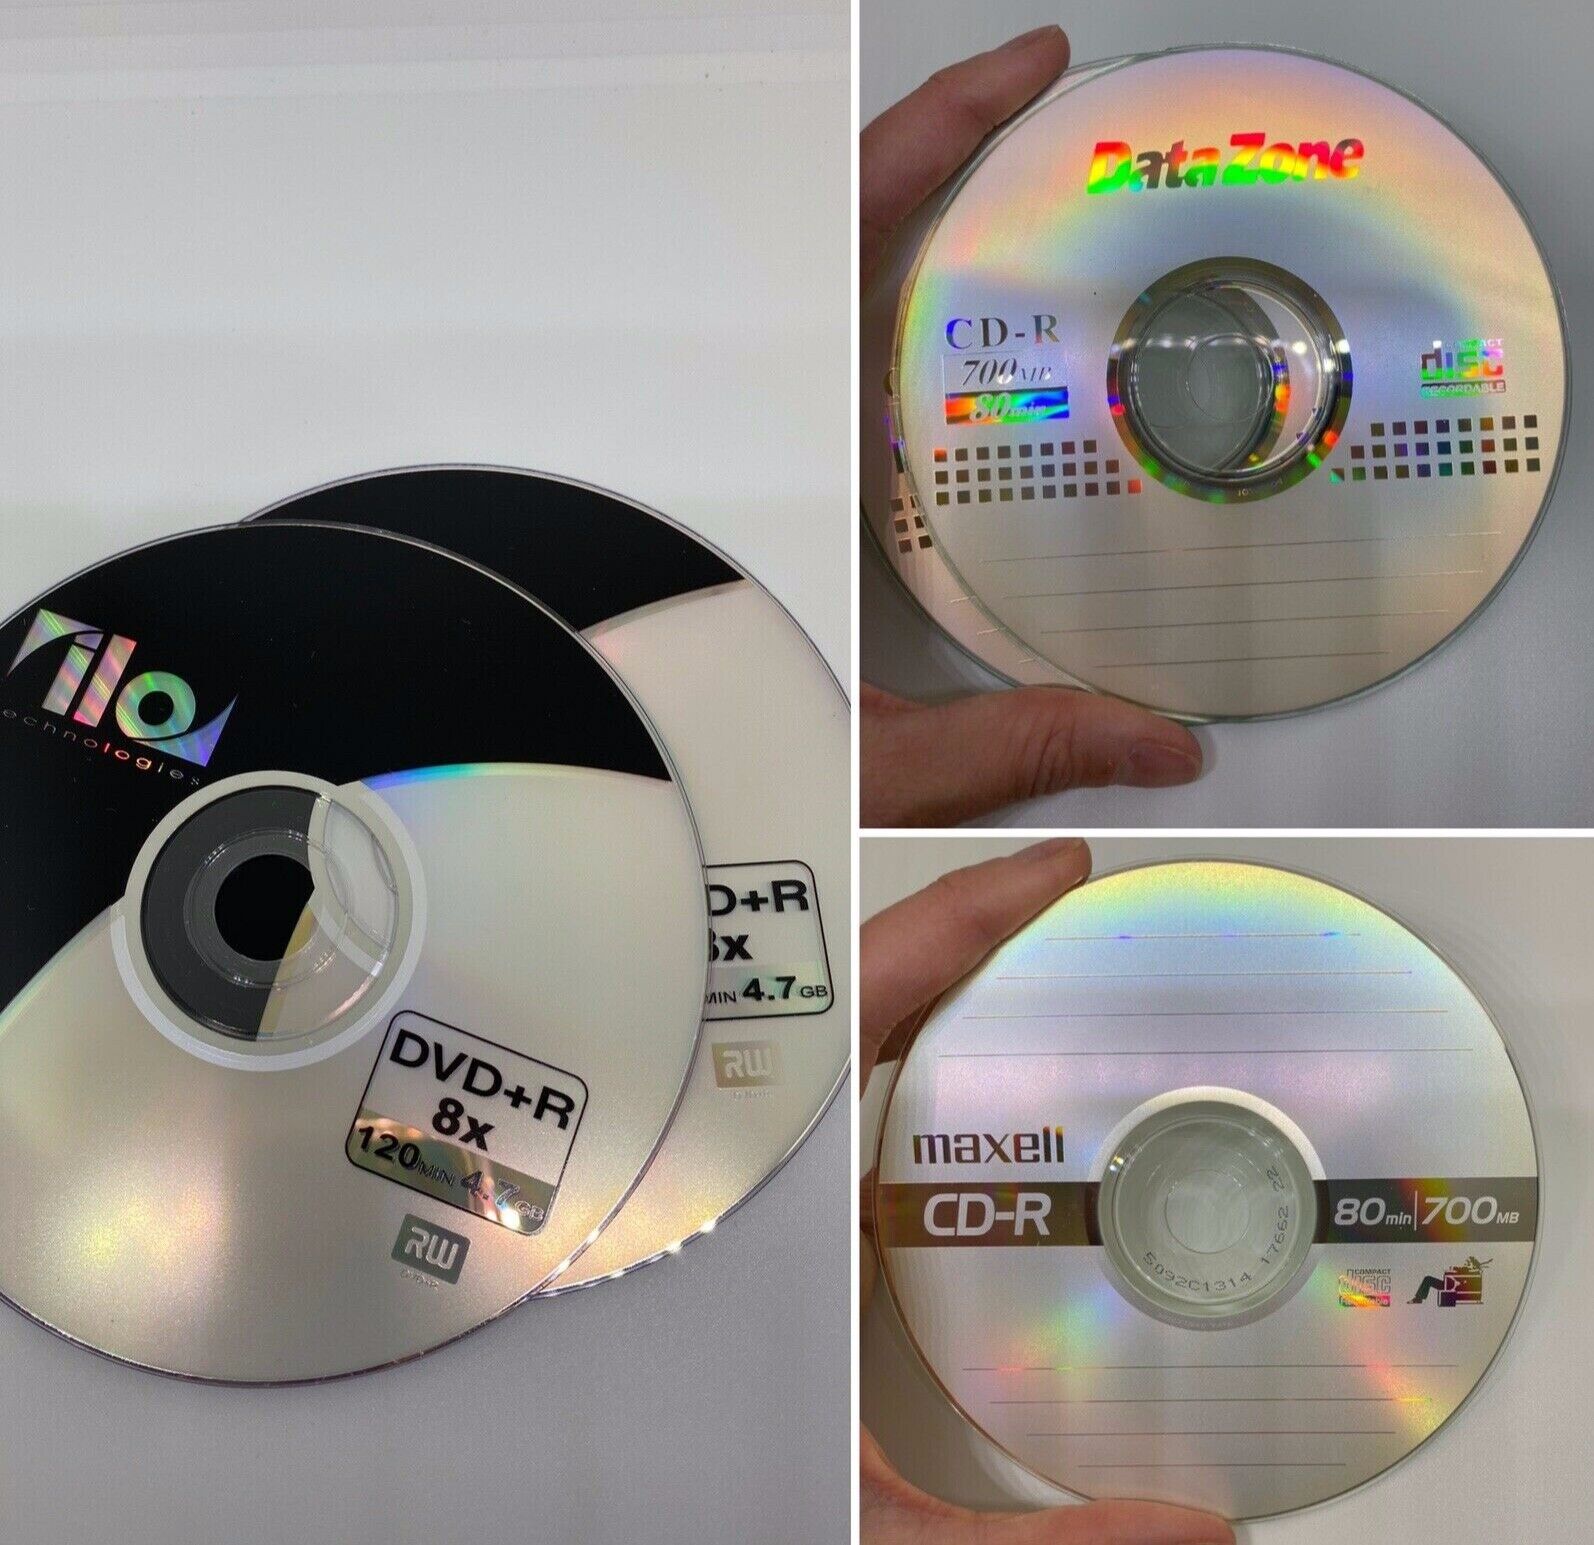 Lot (5) Discs 3 CR-R 700MB 80min Recordable & 2 DVD+RW 120min 4.7GB Maxell / ilo